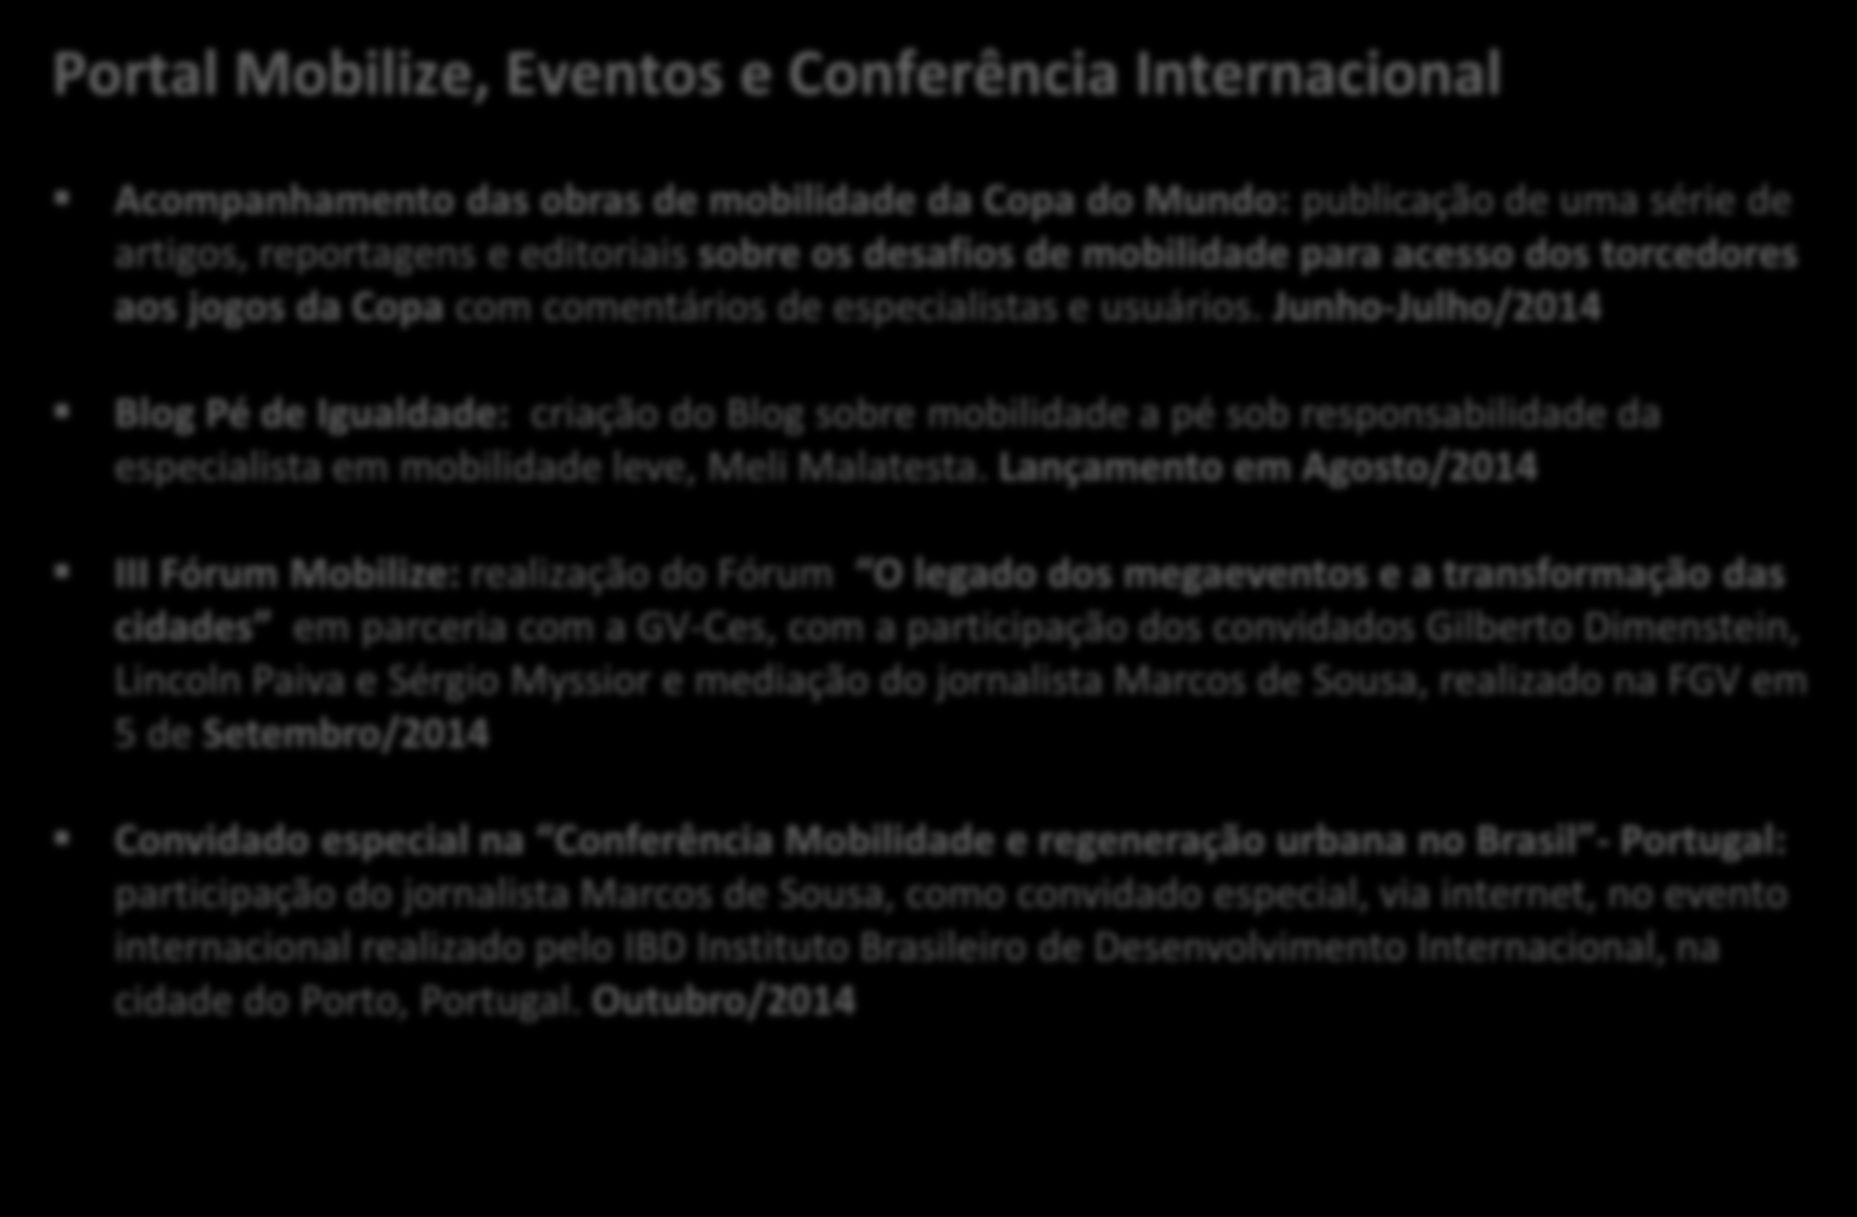 Mobilize Brasil: Atividades realizadas Portal Mobilize, Eventos e Conferência Internacional Acompanhamento das obras de mobilidade da Copa do Mundo: publicação de uma série de artigos, reportagens e